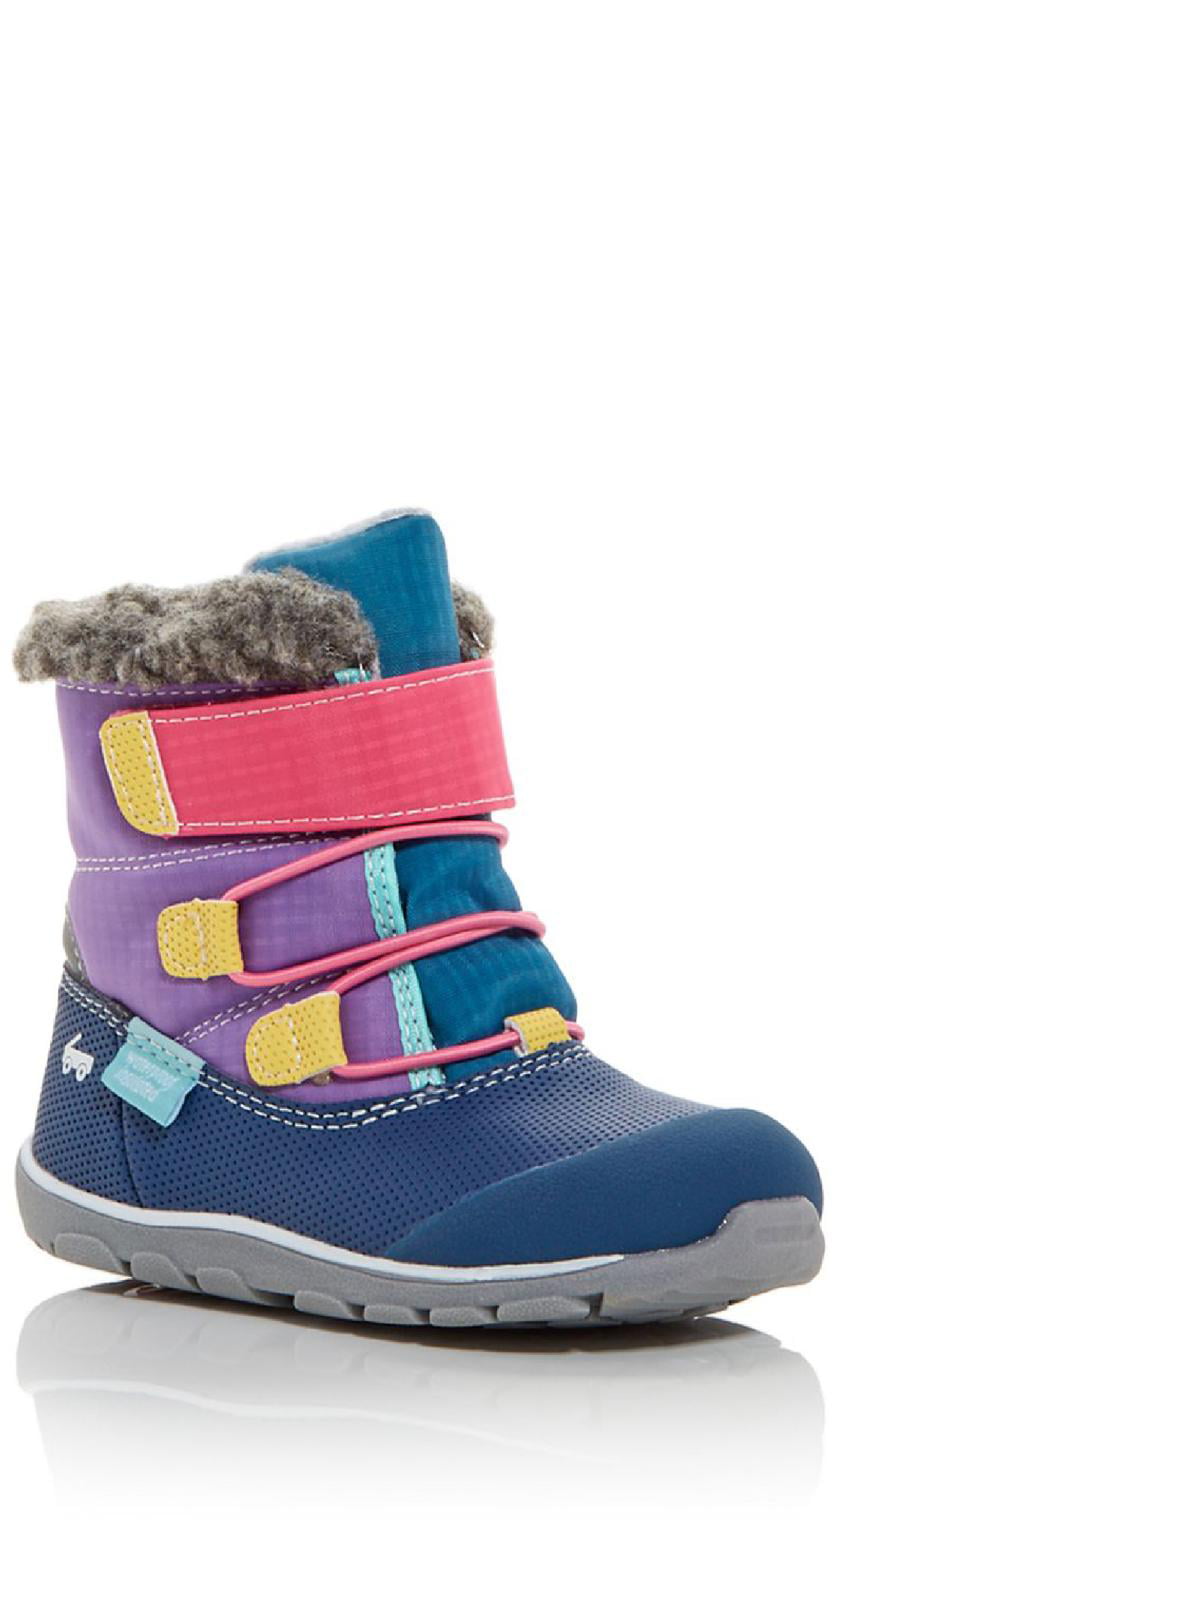 sizes 5-9 US toddler See Kai Run girl's Mizuki Gray/Mint boots NEW with box 